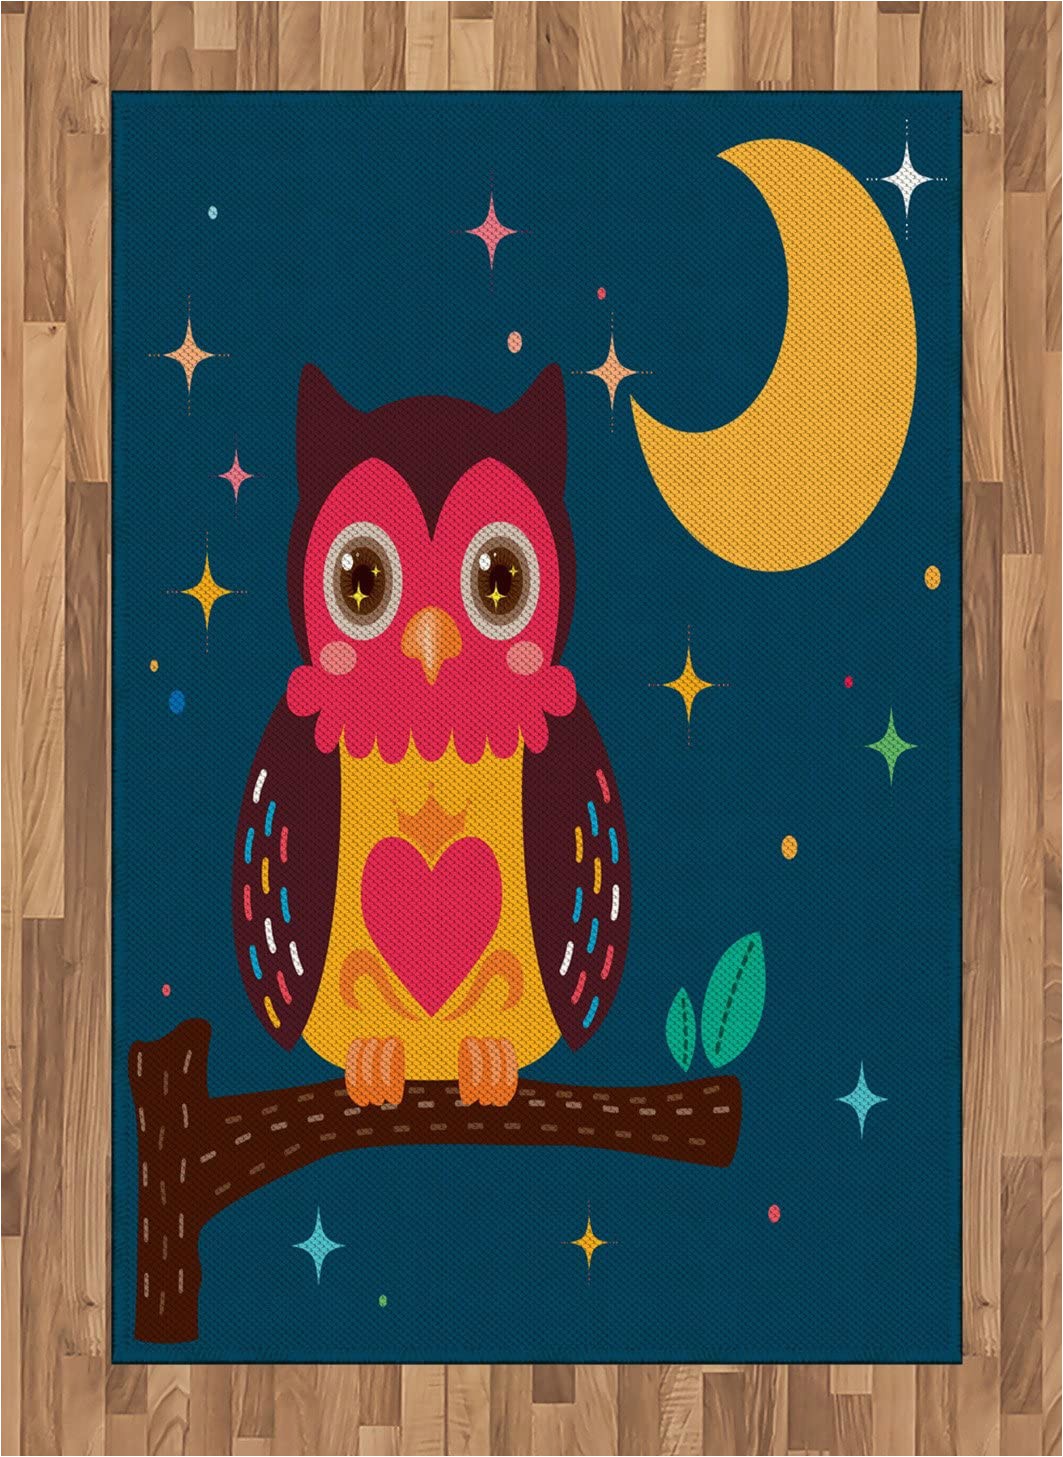 Owl area Rug for Nursery Amazon Lunarable Owl area Rug Nursery Style Cartoon